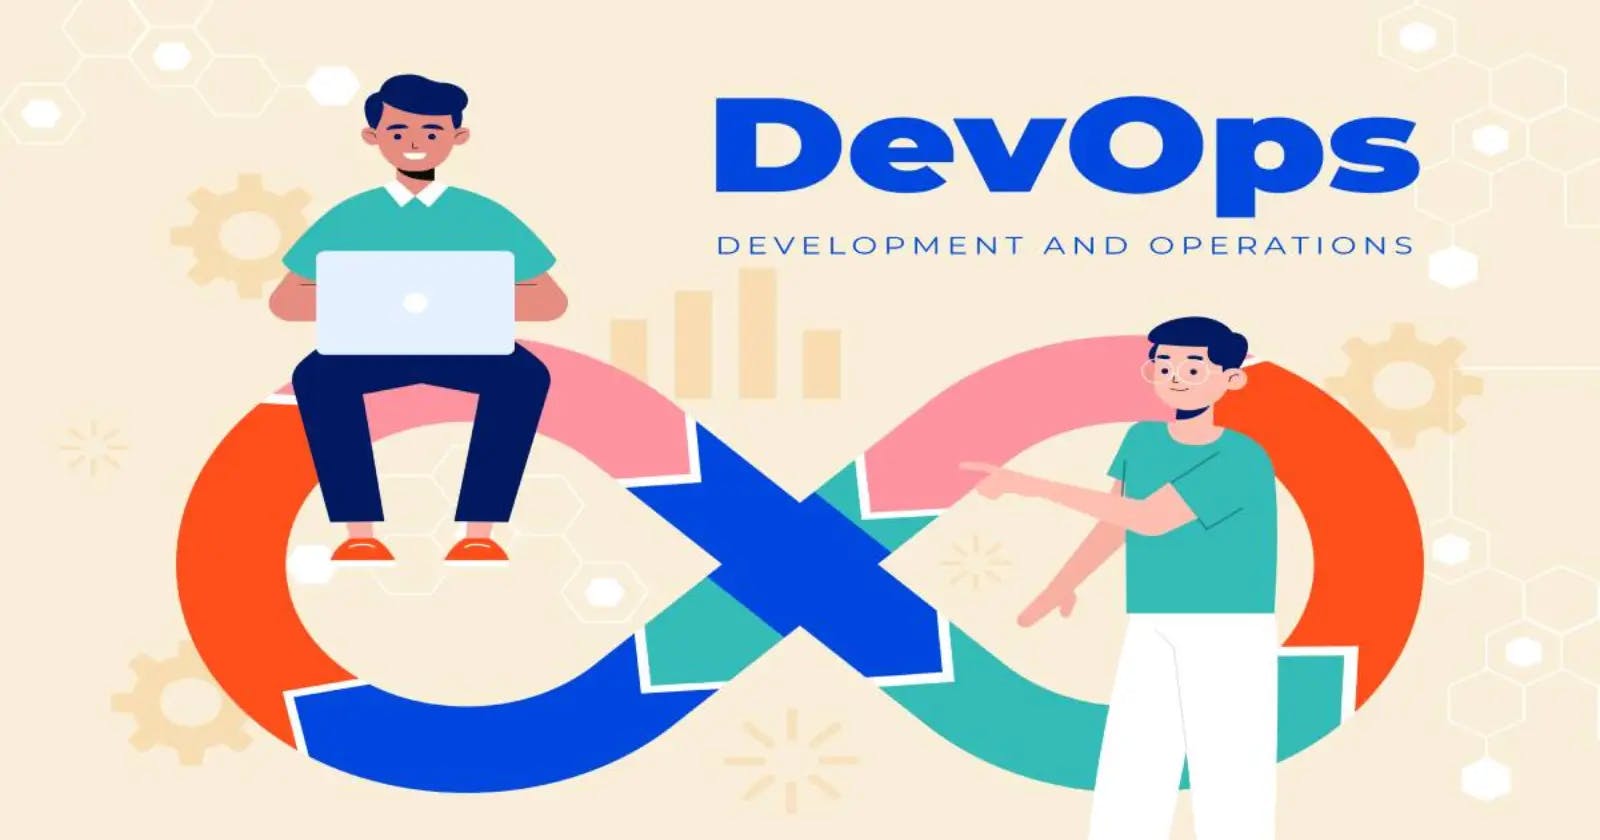 Understanding of DevOps